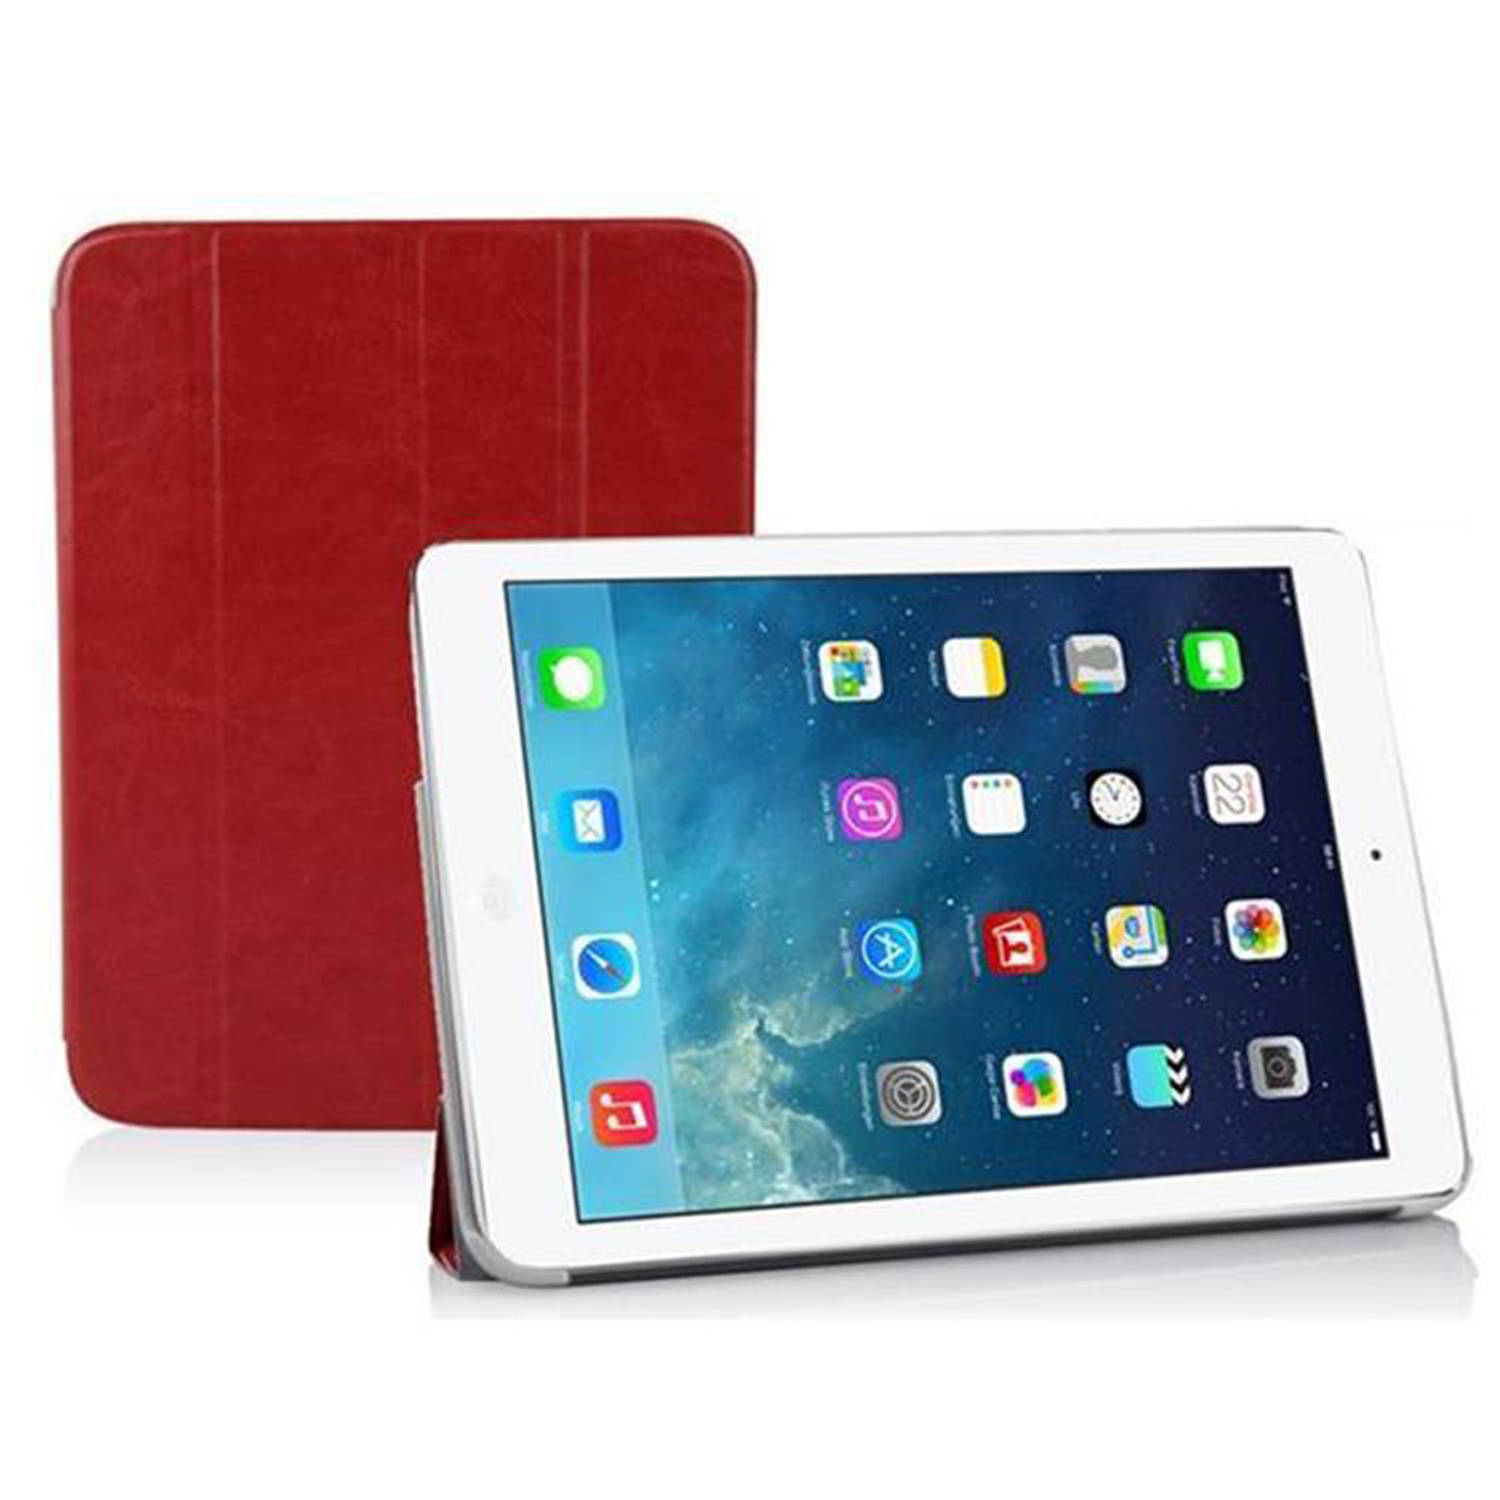 Cadorabo Tablet hoes voor Apple iPad AIR 2 2014 / AIR 2013 in ZINNOBER ROOD - Ultra dunne beschermhoes met automatische waakstand en standfunctie